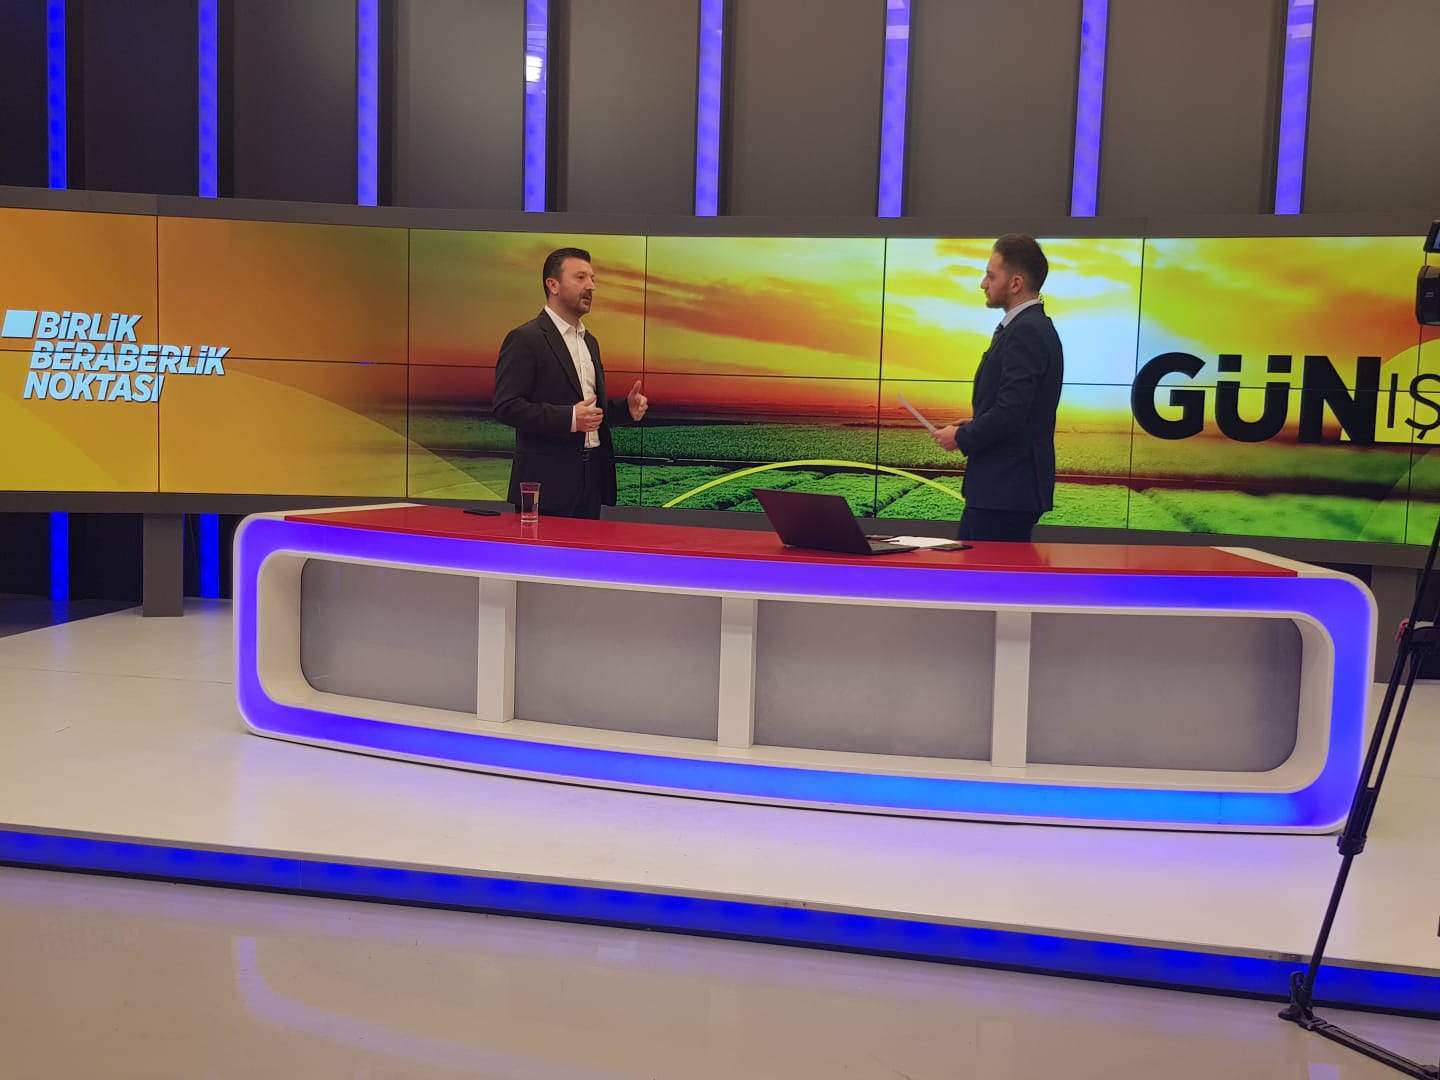 BBN TÜRK TV-  "GÜN IŞIĞI" PROGRAMI